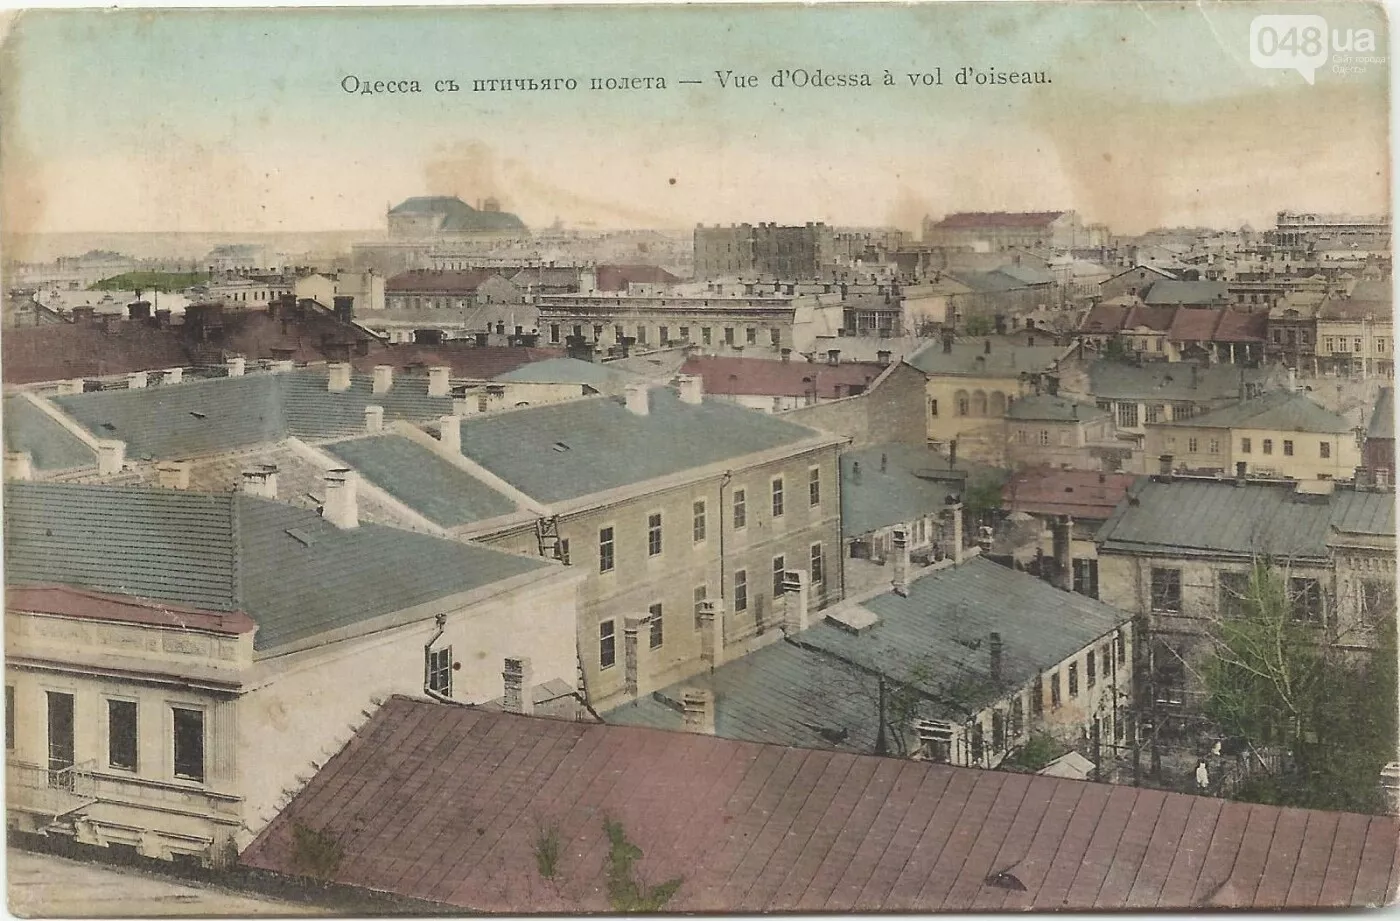 У ХІХ столітті це був найвищий житловий будинок в Одесі